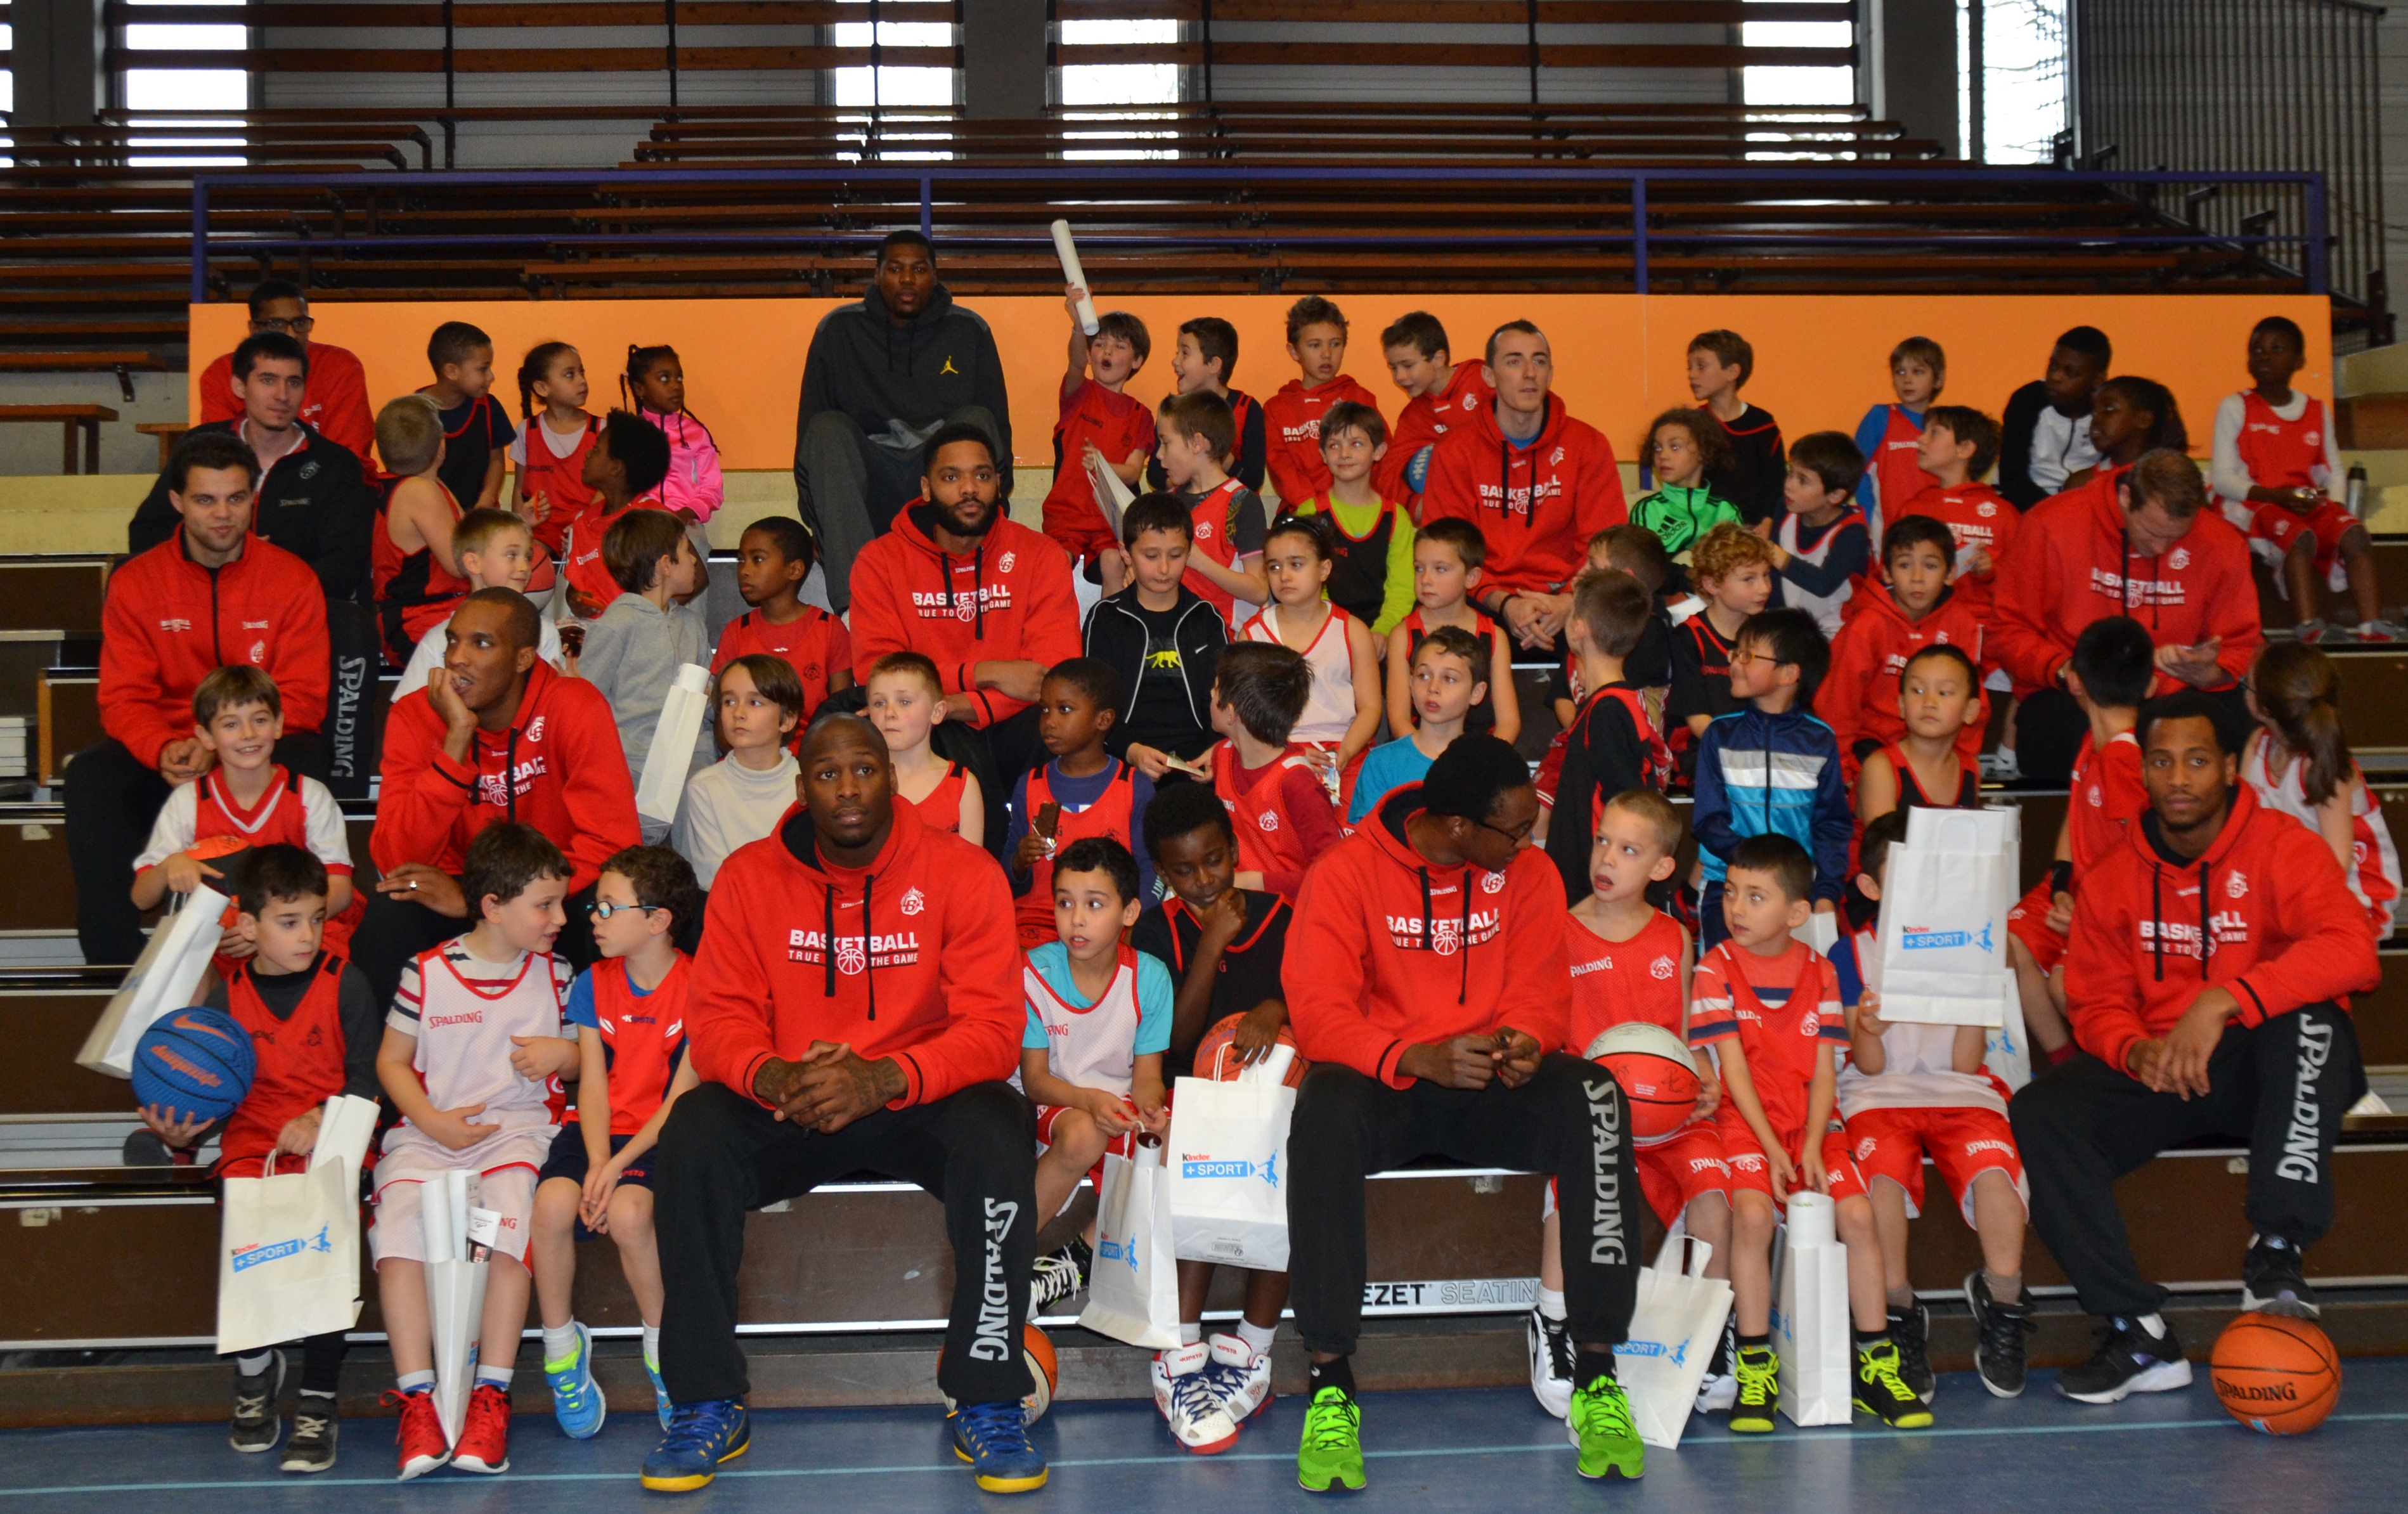 Les joueurs pros de CB en séance de dédicace avec les jeunes de l'association au Kinder + Sport Basket Day à la Salle Du Bellay le 16/12/15.